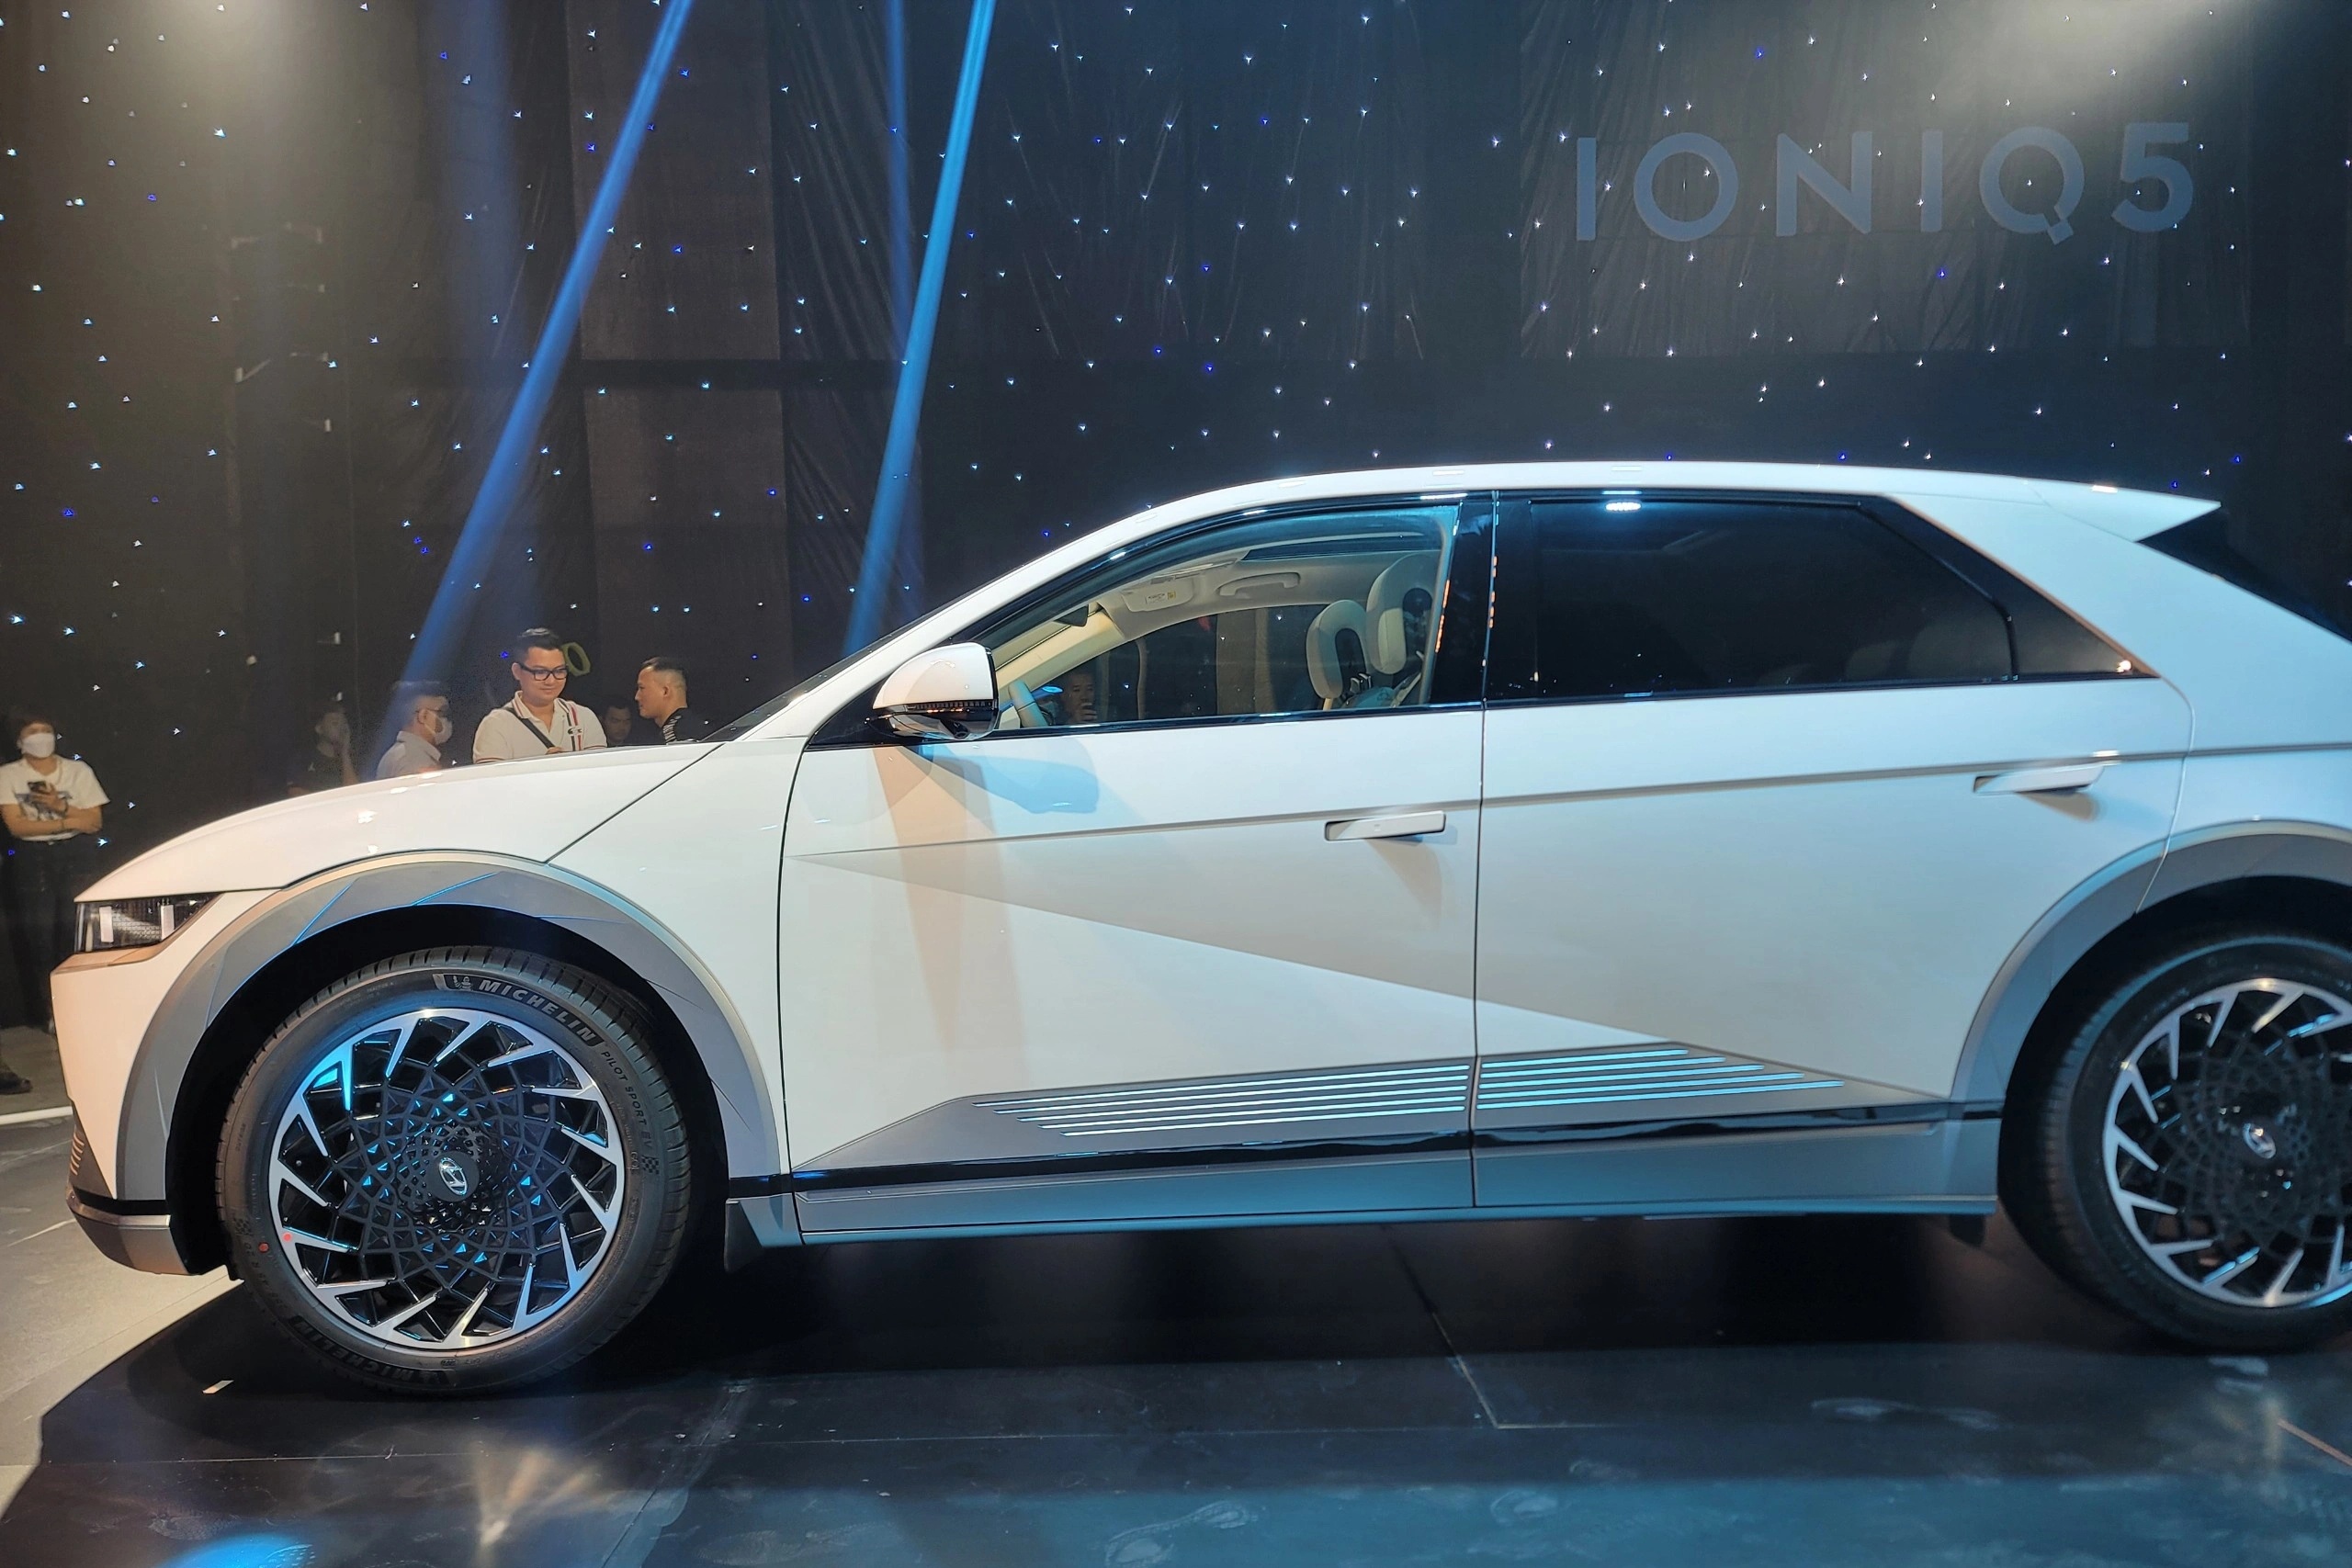 Đại lý Hyundai chào bán Ioniq 5 giá gần 2 tỷ đồng - ảnh 3